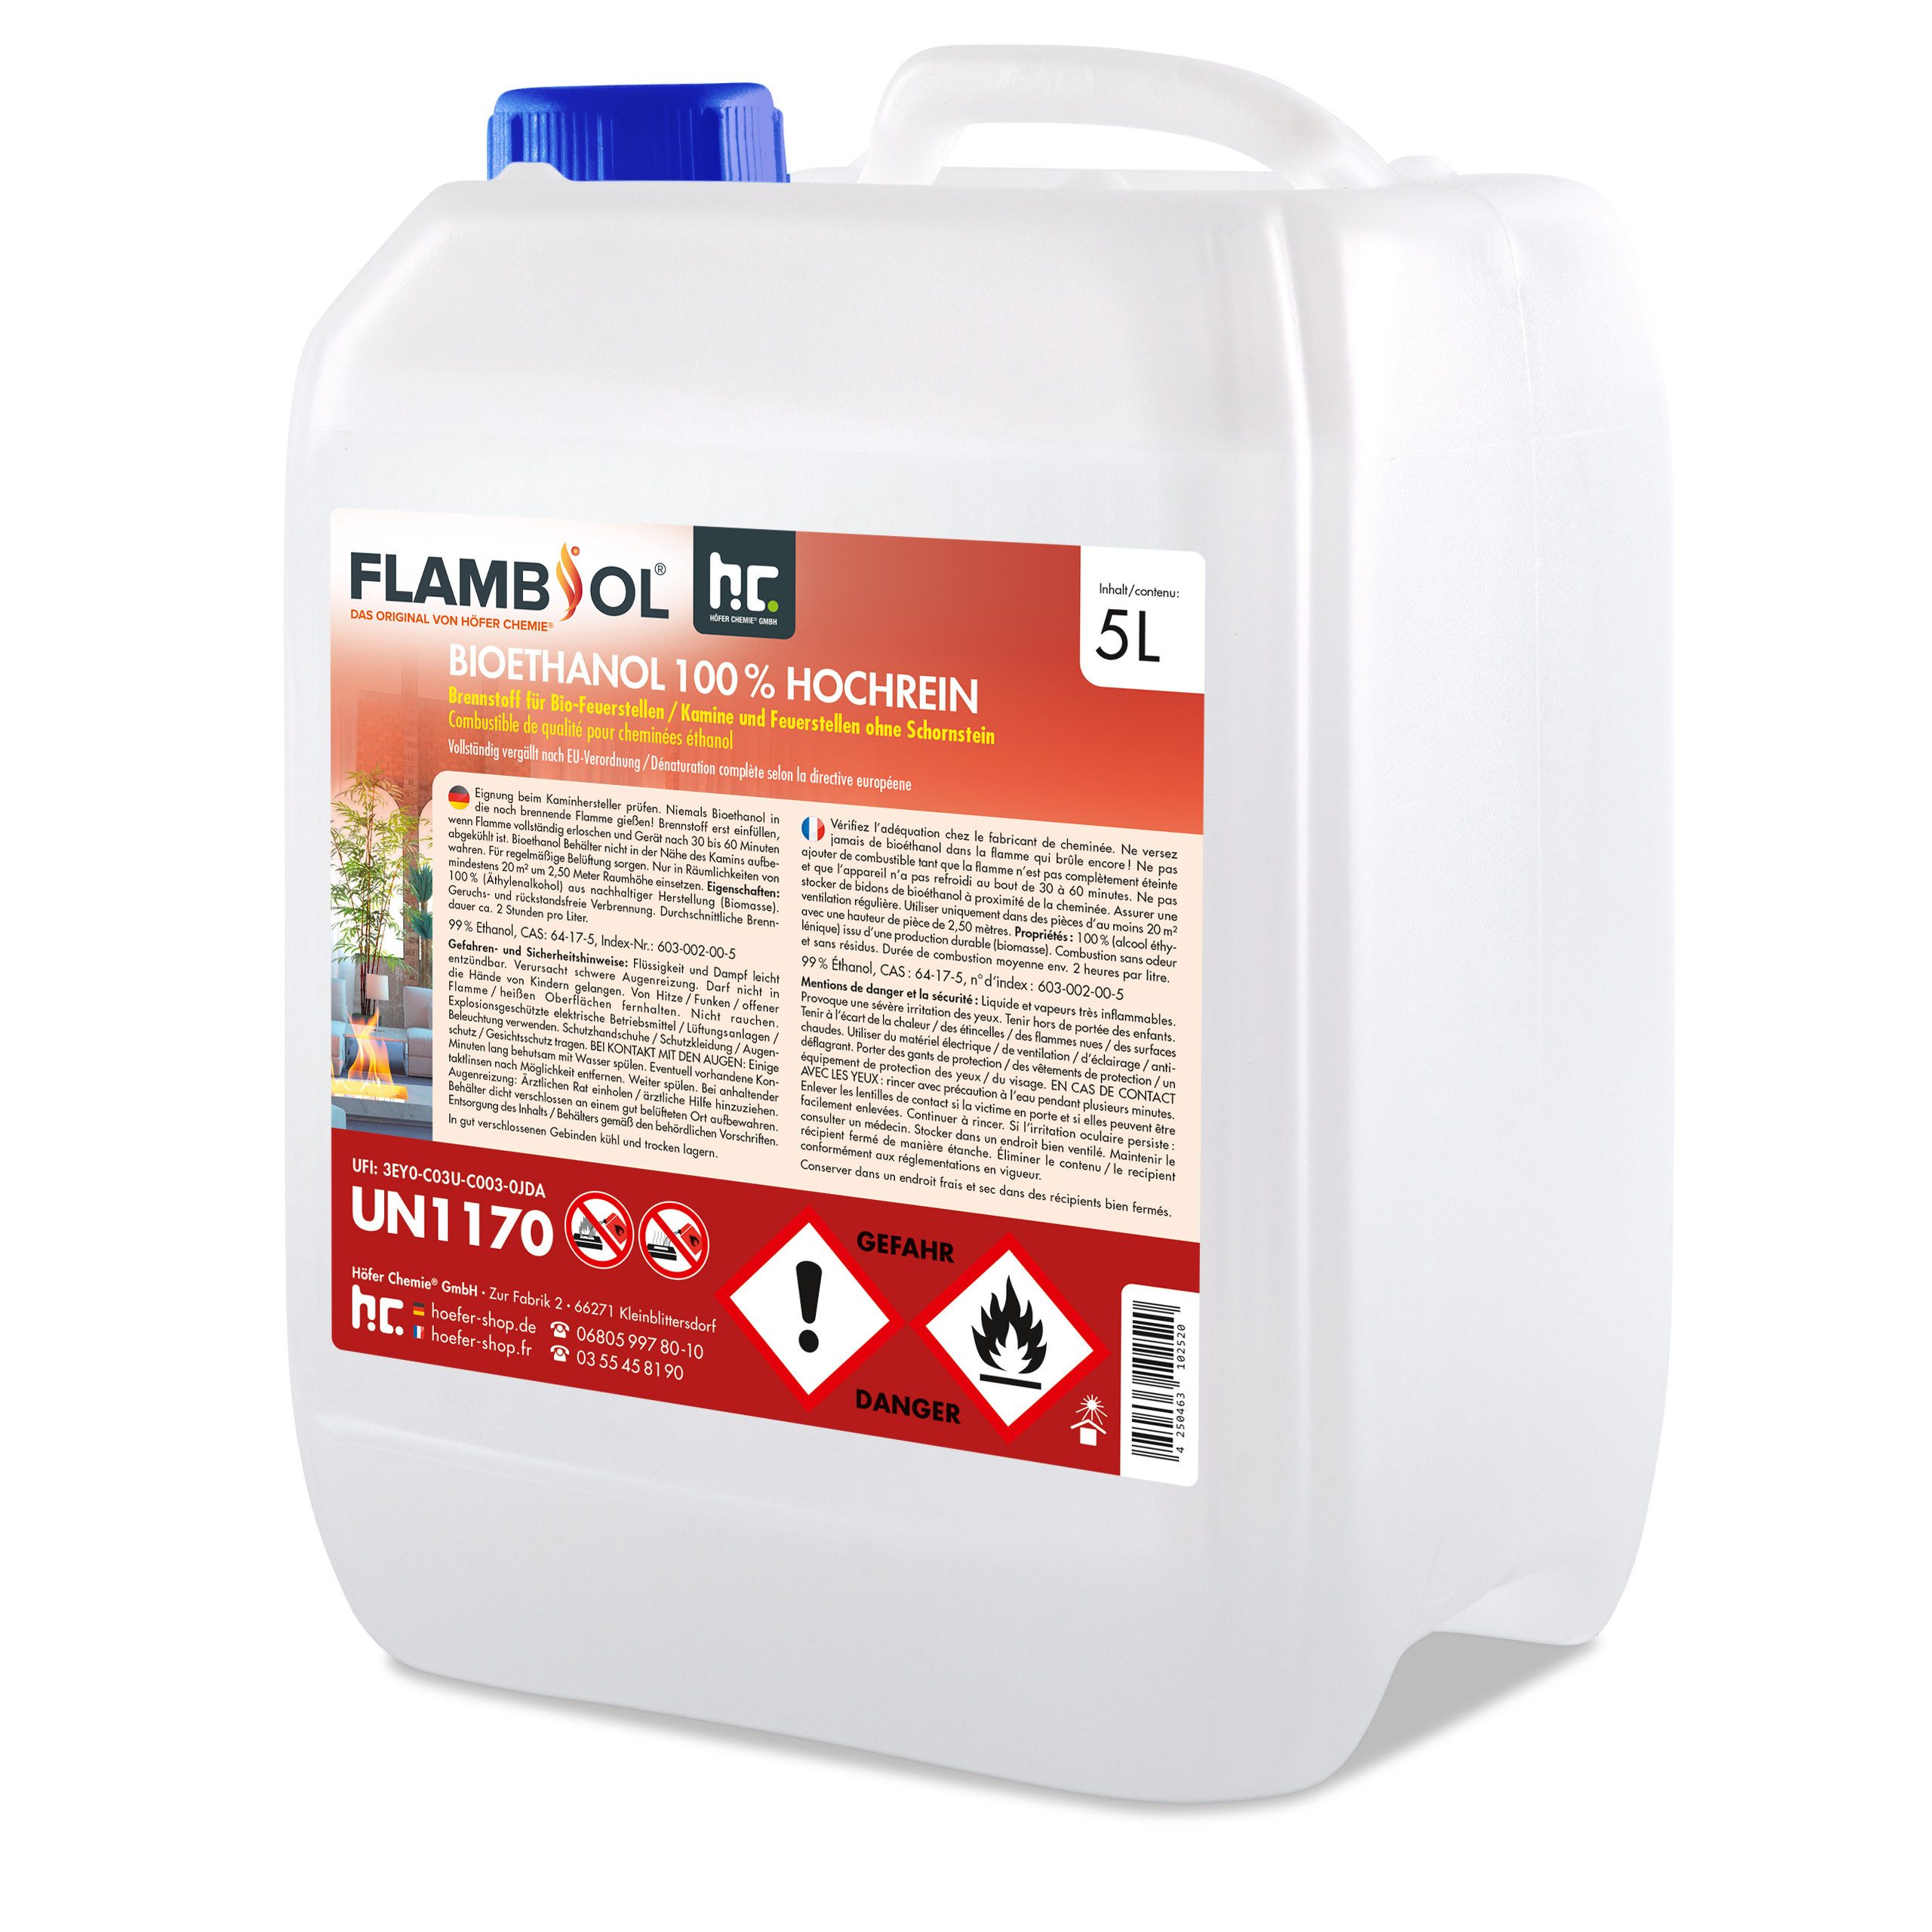 FLAMBIOL Bioethanol 5 L FLAMBIOL® Bioethanol 100 % Hochrein, 5 kg